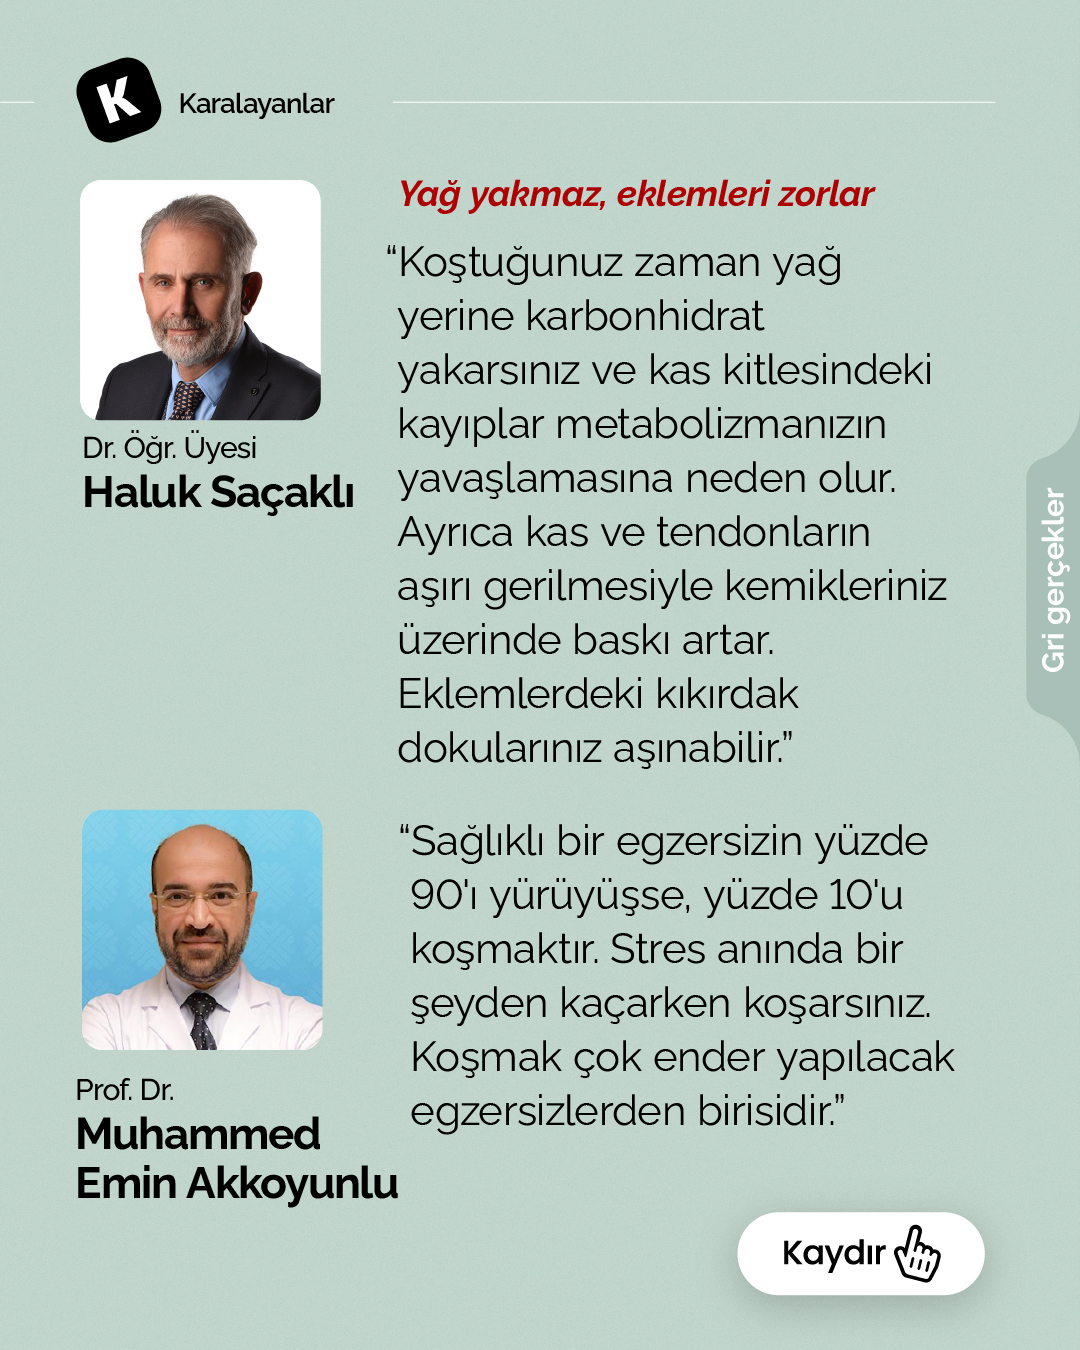 Dr. Gülnur Öztürk: Sol burunla yapılan nefes çalışmaları kalp hızını ve tansiyonu düşürüyor